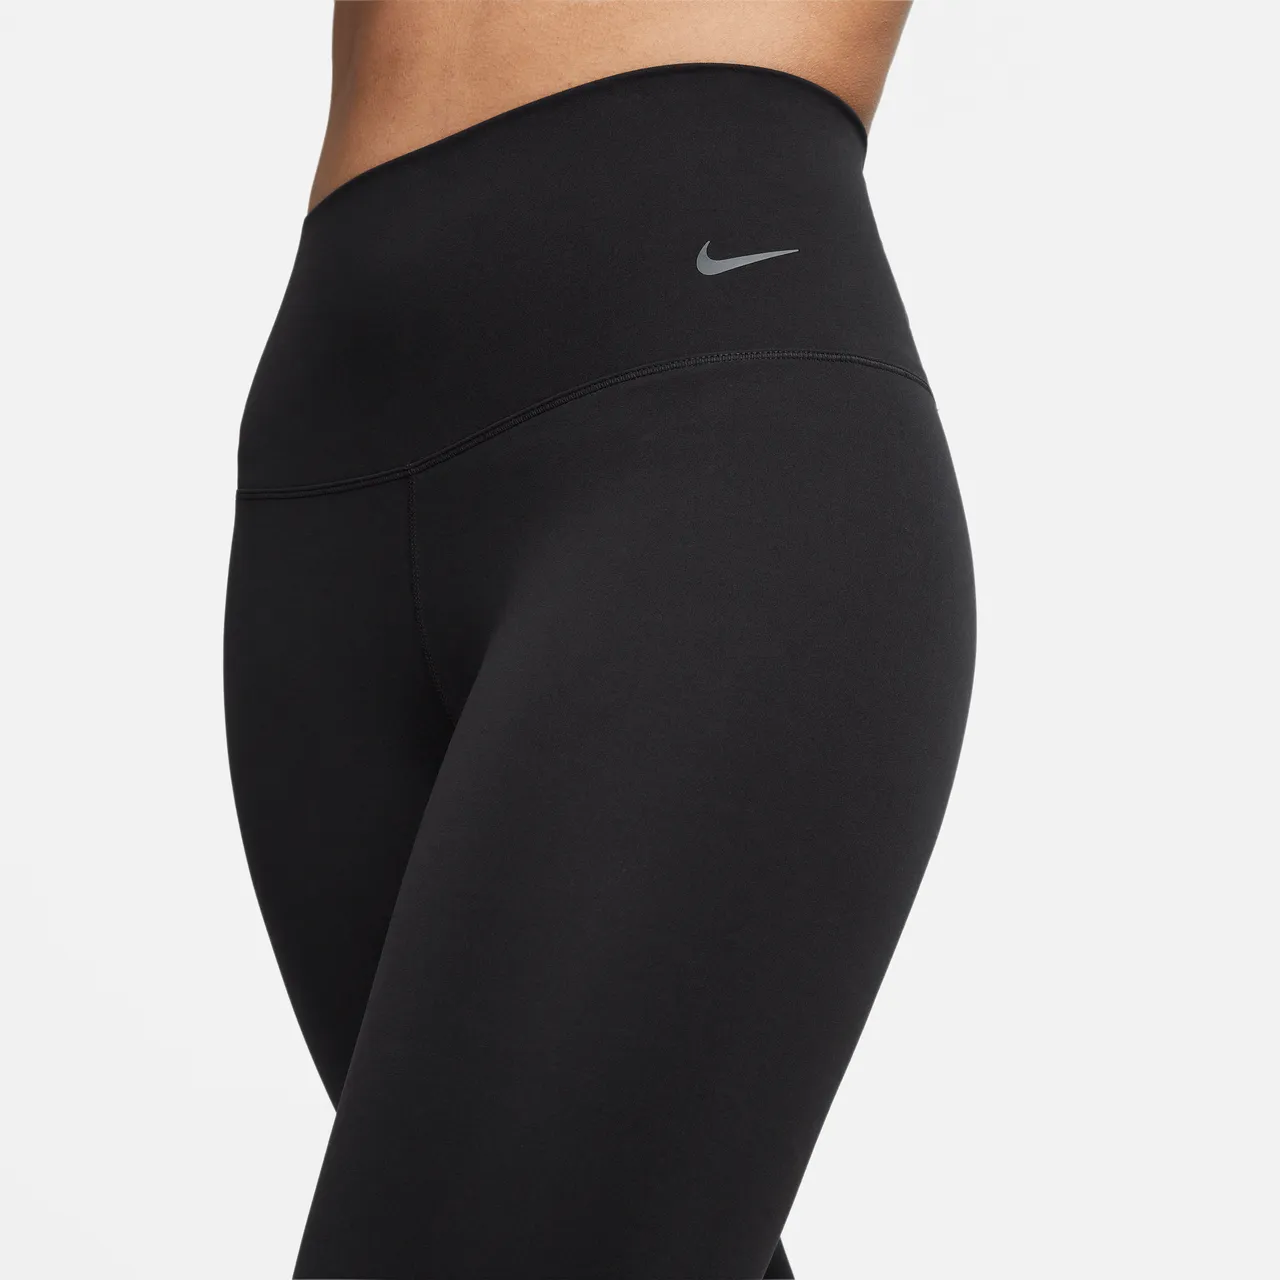 Nike Zenvy Women's Gentle-Support High-Waisted Full-Length Leggings - Black - Nylon